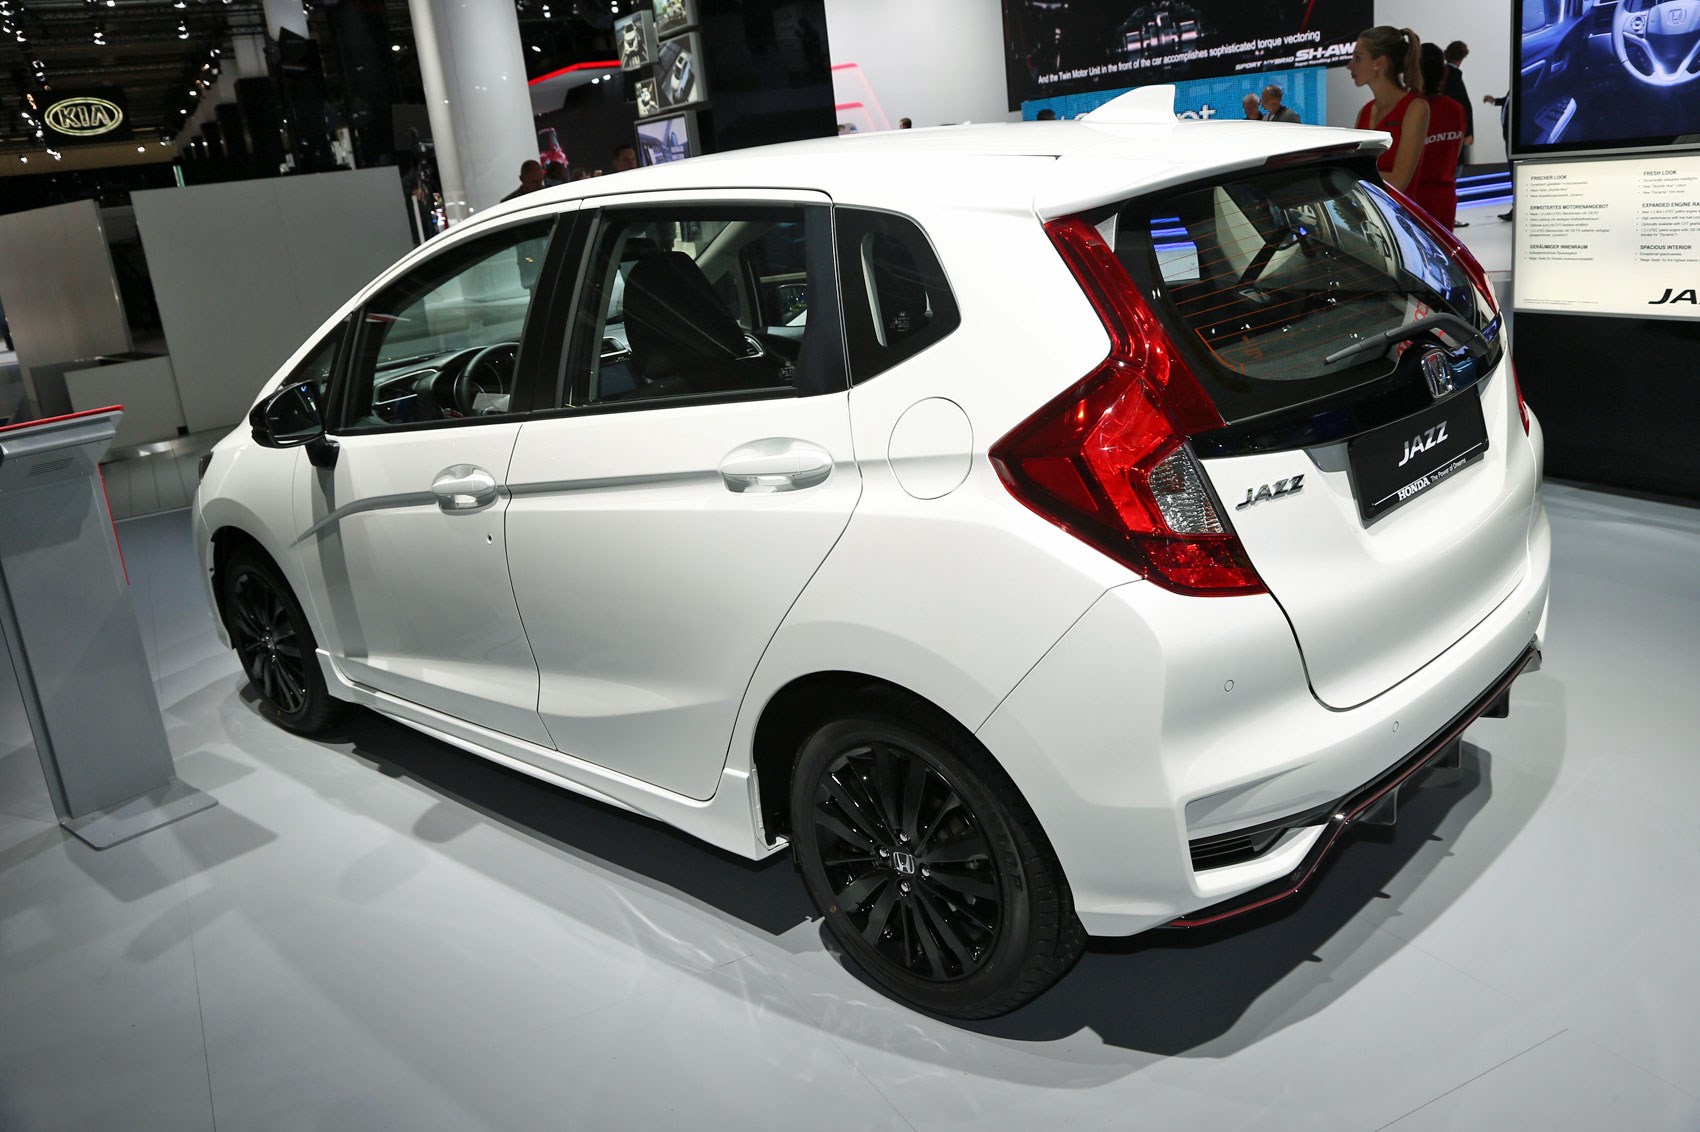 New Honda Jazz 18 Uk Prices For Facelifted Mini Civic Revealed Car Magazine